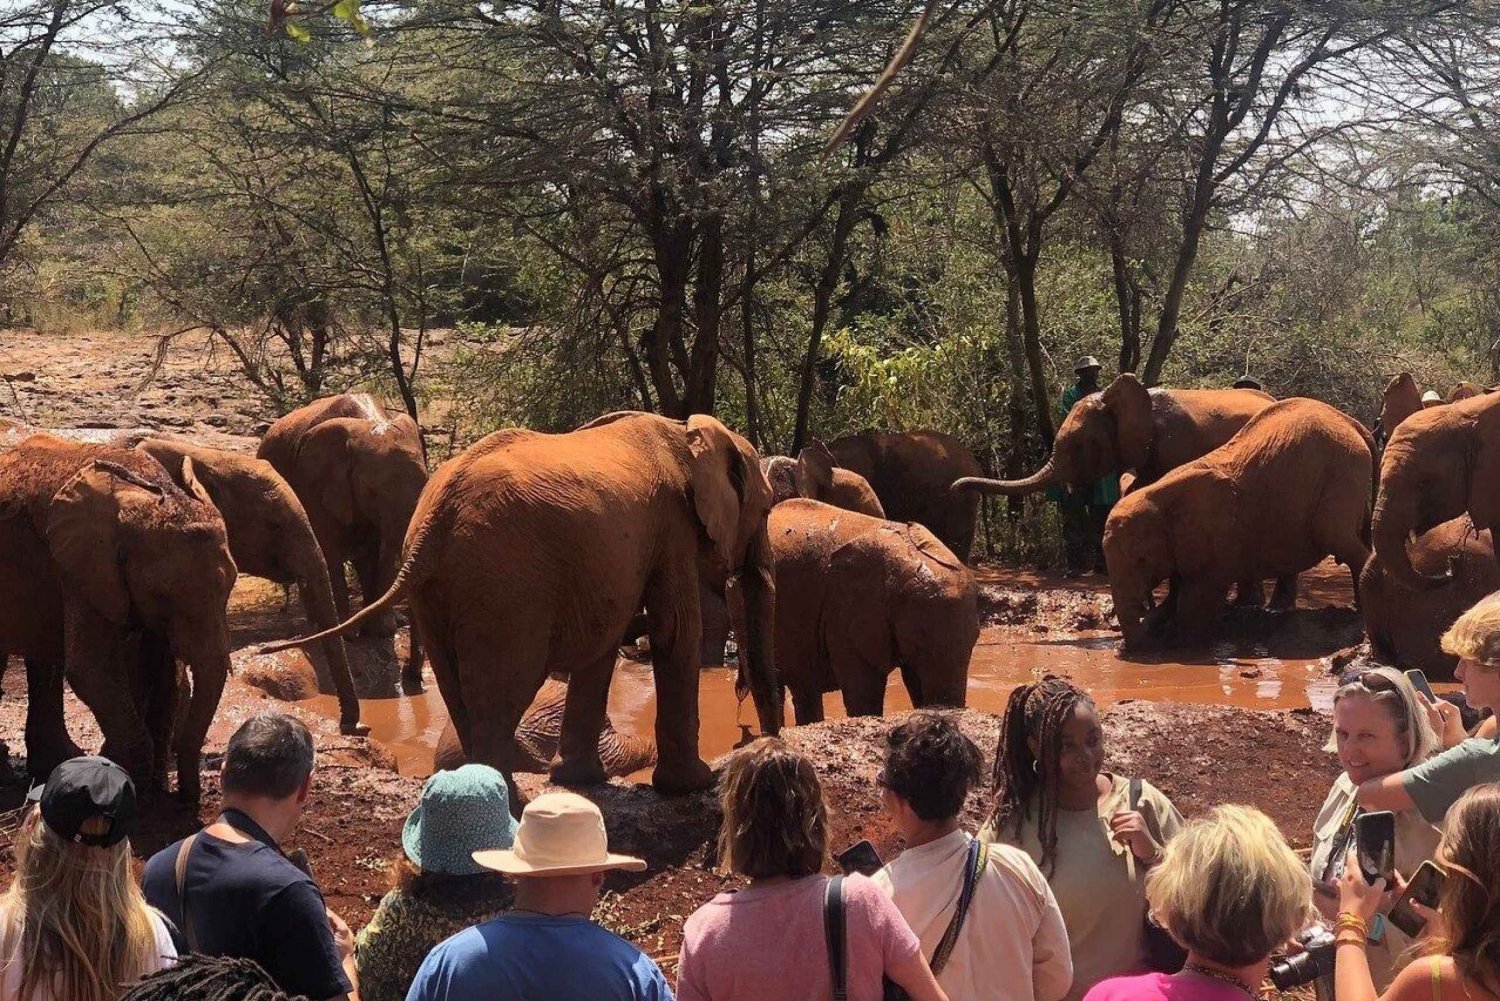 Nairóbi: Excursão ao Parque Nacional de Nairóbi e Orfanato de Elefantes